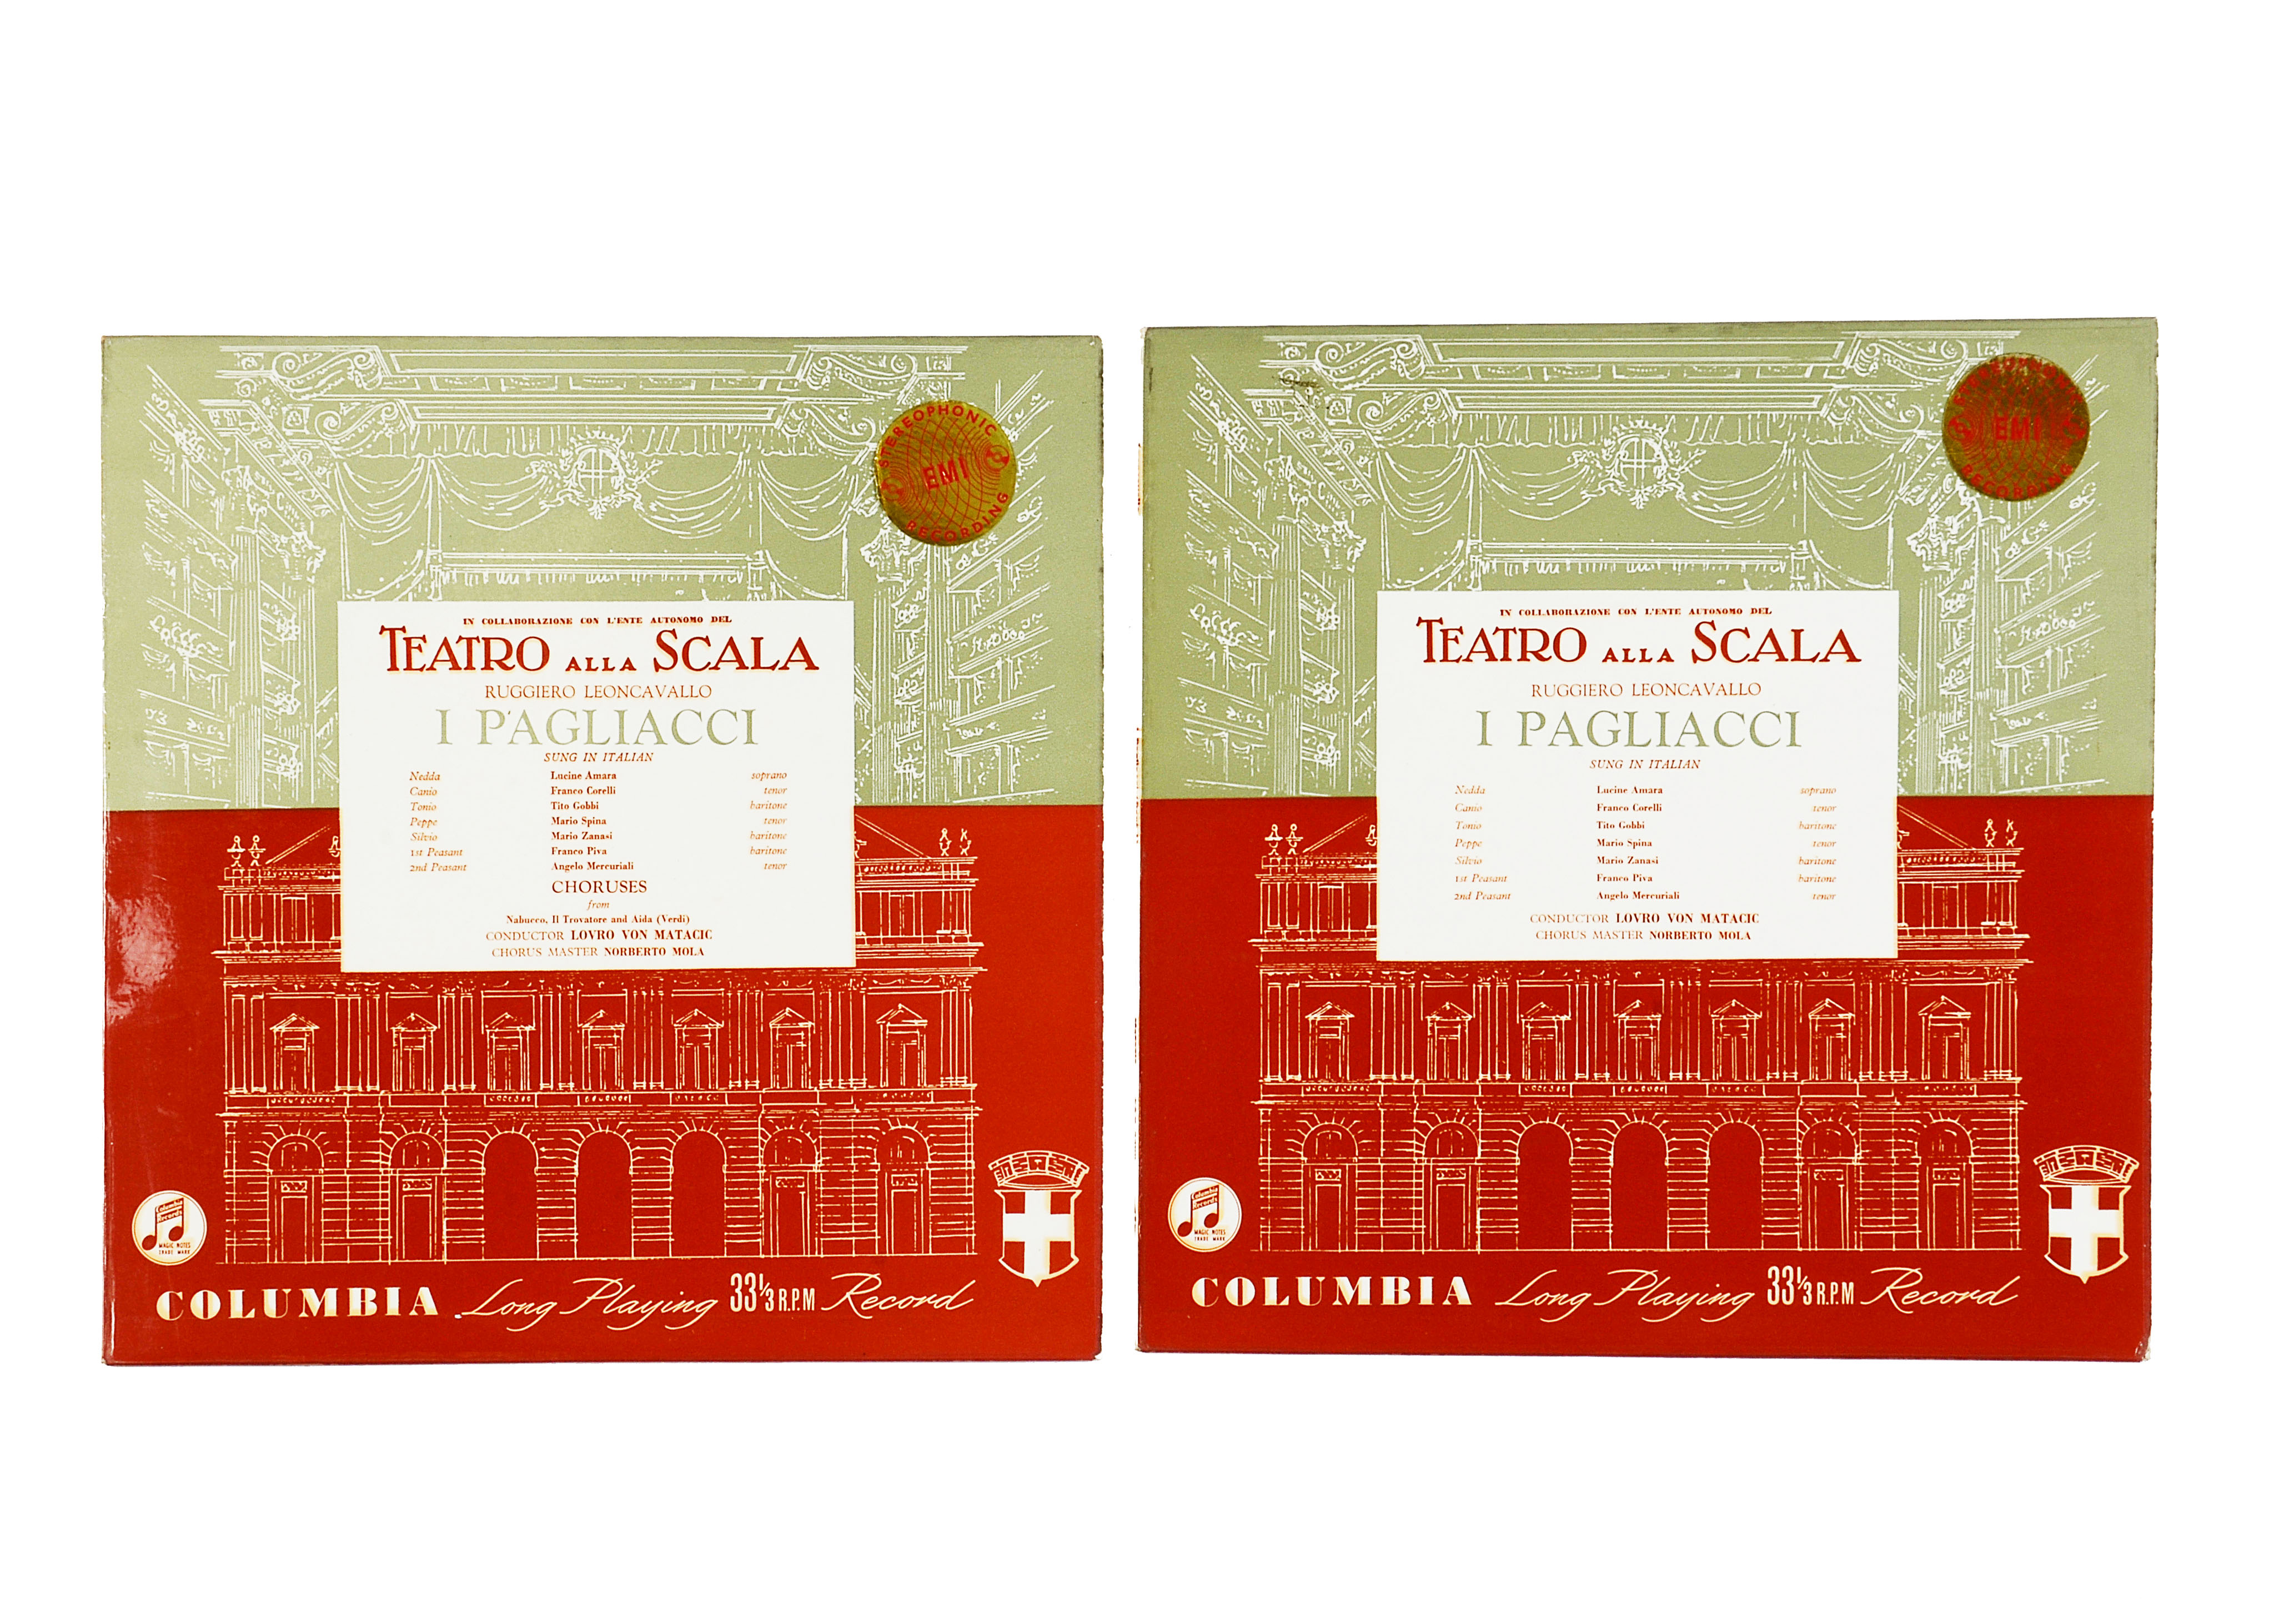 Opera, SAX 2399-400 - Teatro Alla Scala - I Pagliacci, First Press Columbia Stereo two album set, in